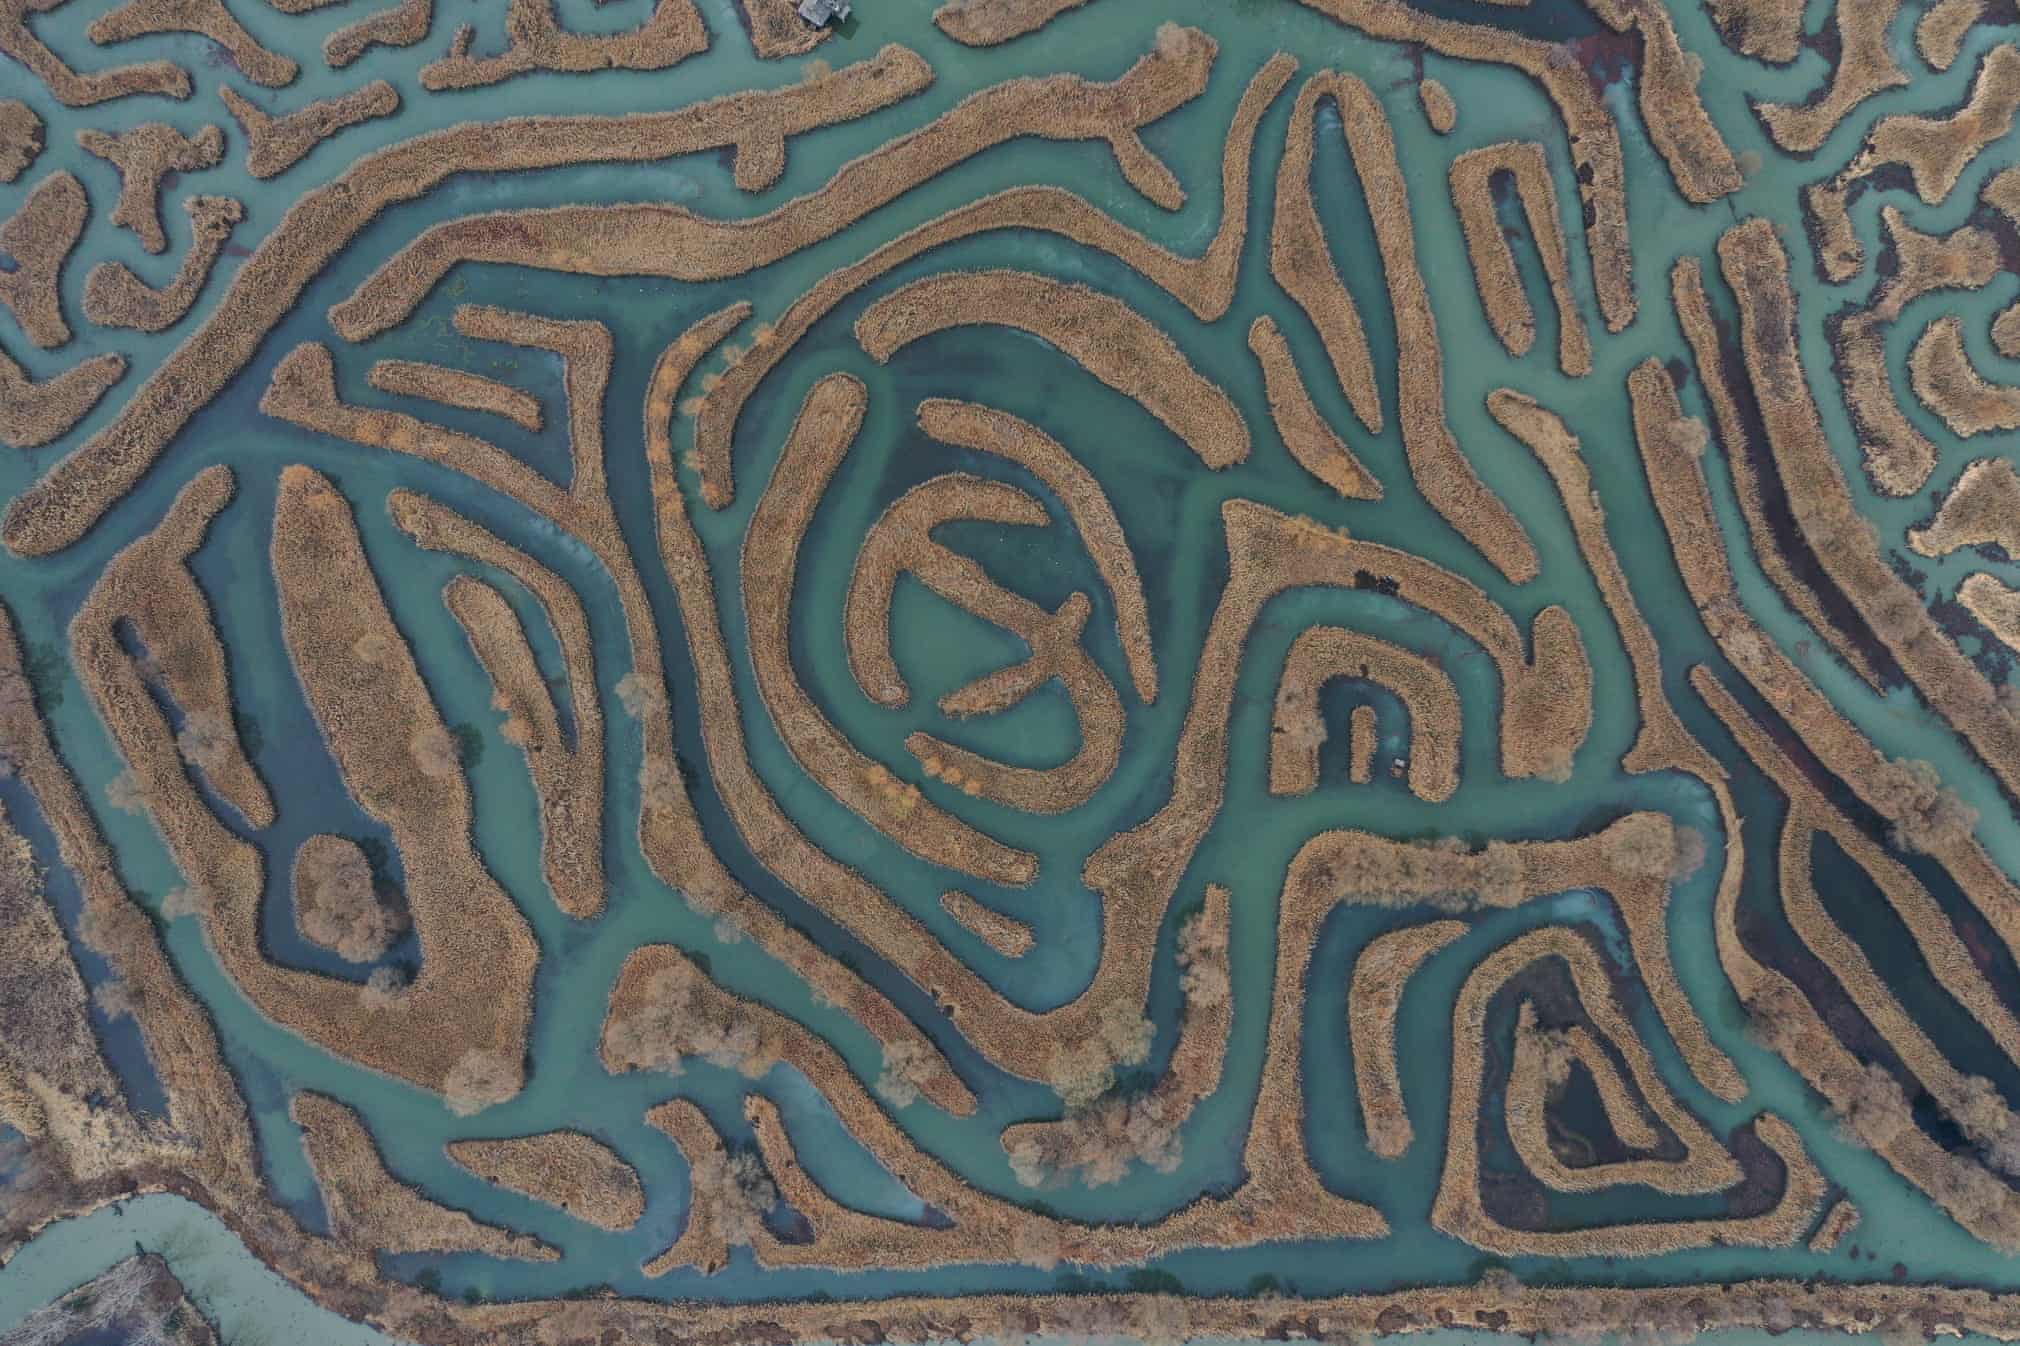 Xitoyning Yanchen hududidagi Dadzun bog‘ida joylashgan shakarqamish labirinti.